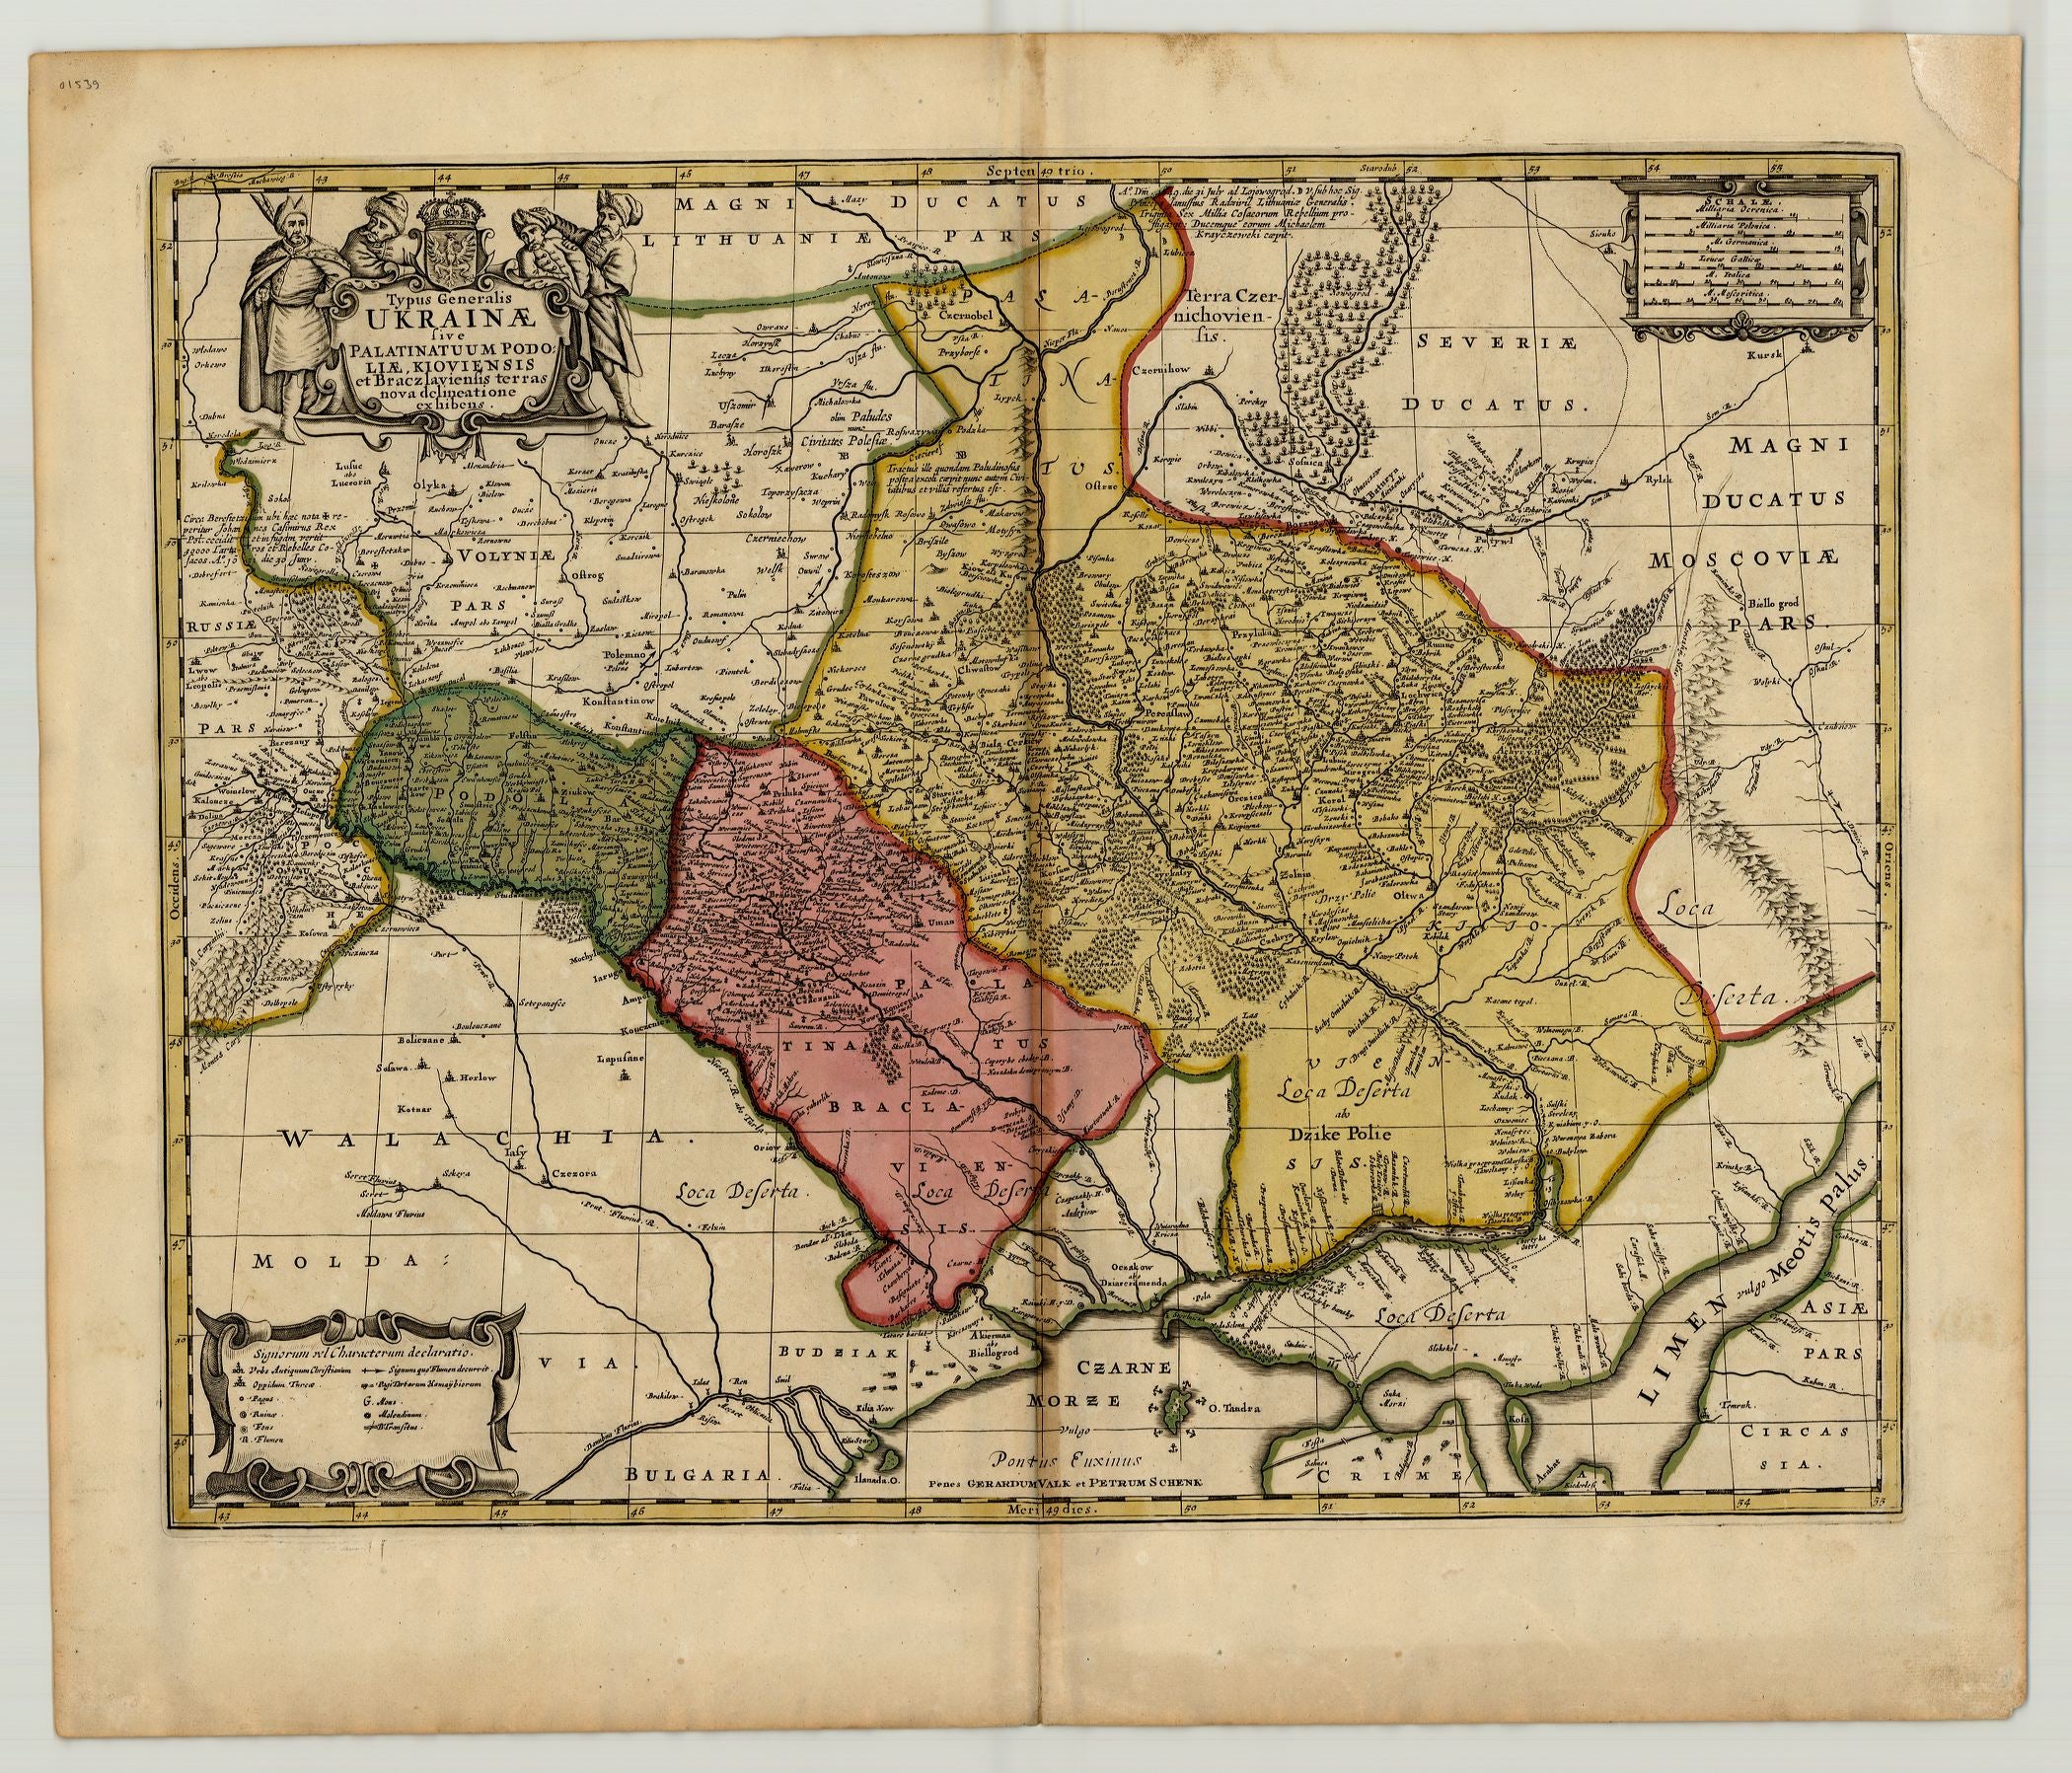 Ukraine ab 1694 von Gerrit Leendertsz  Valck § Peter Schenk nach Beauplan